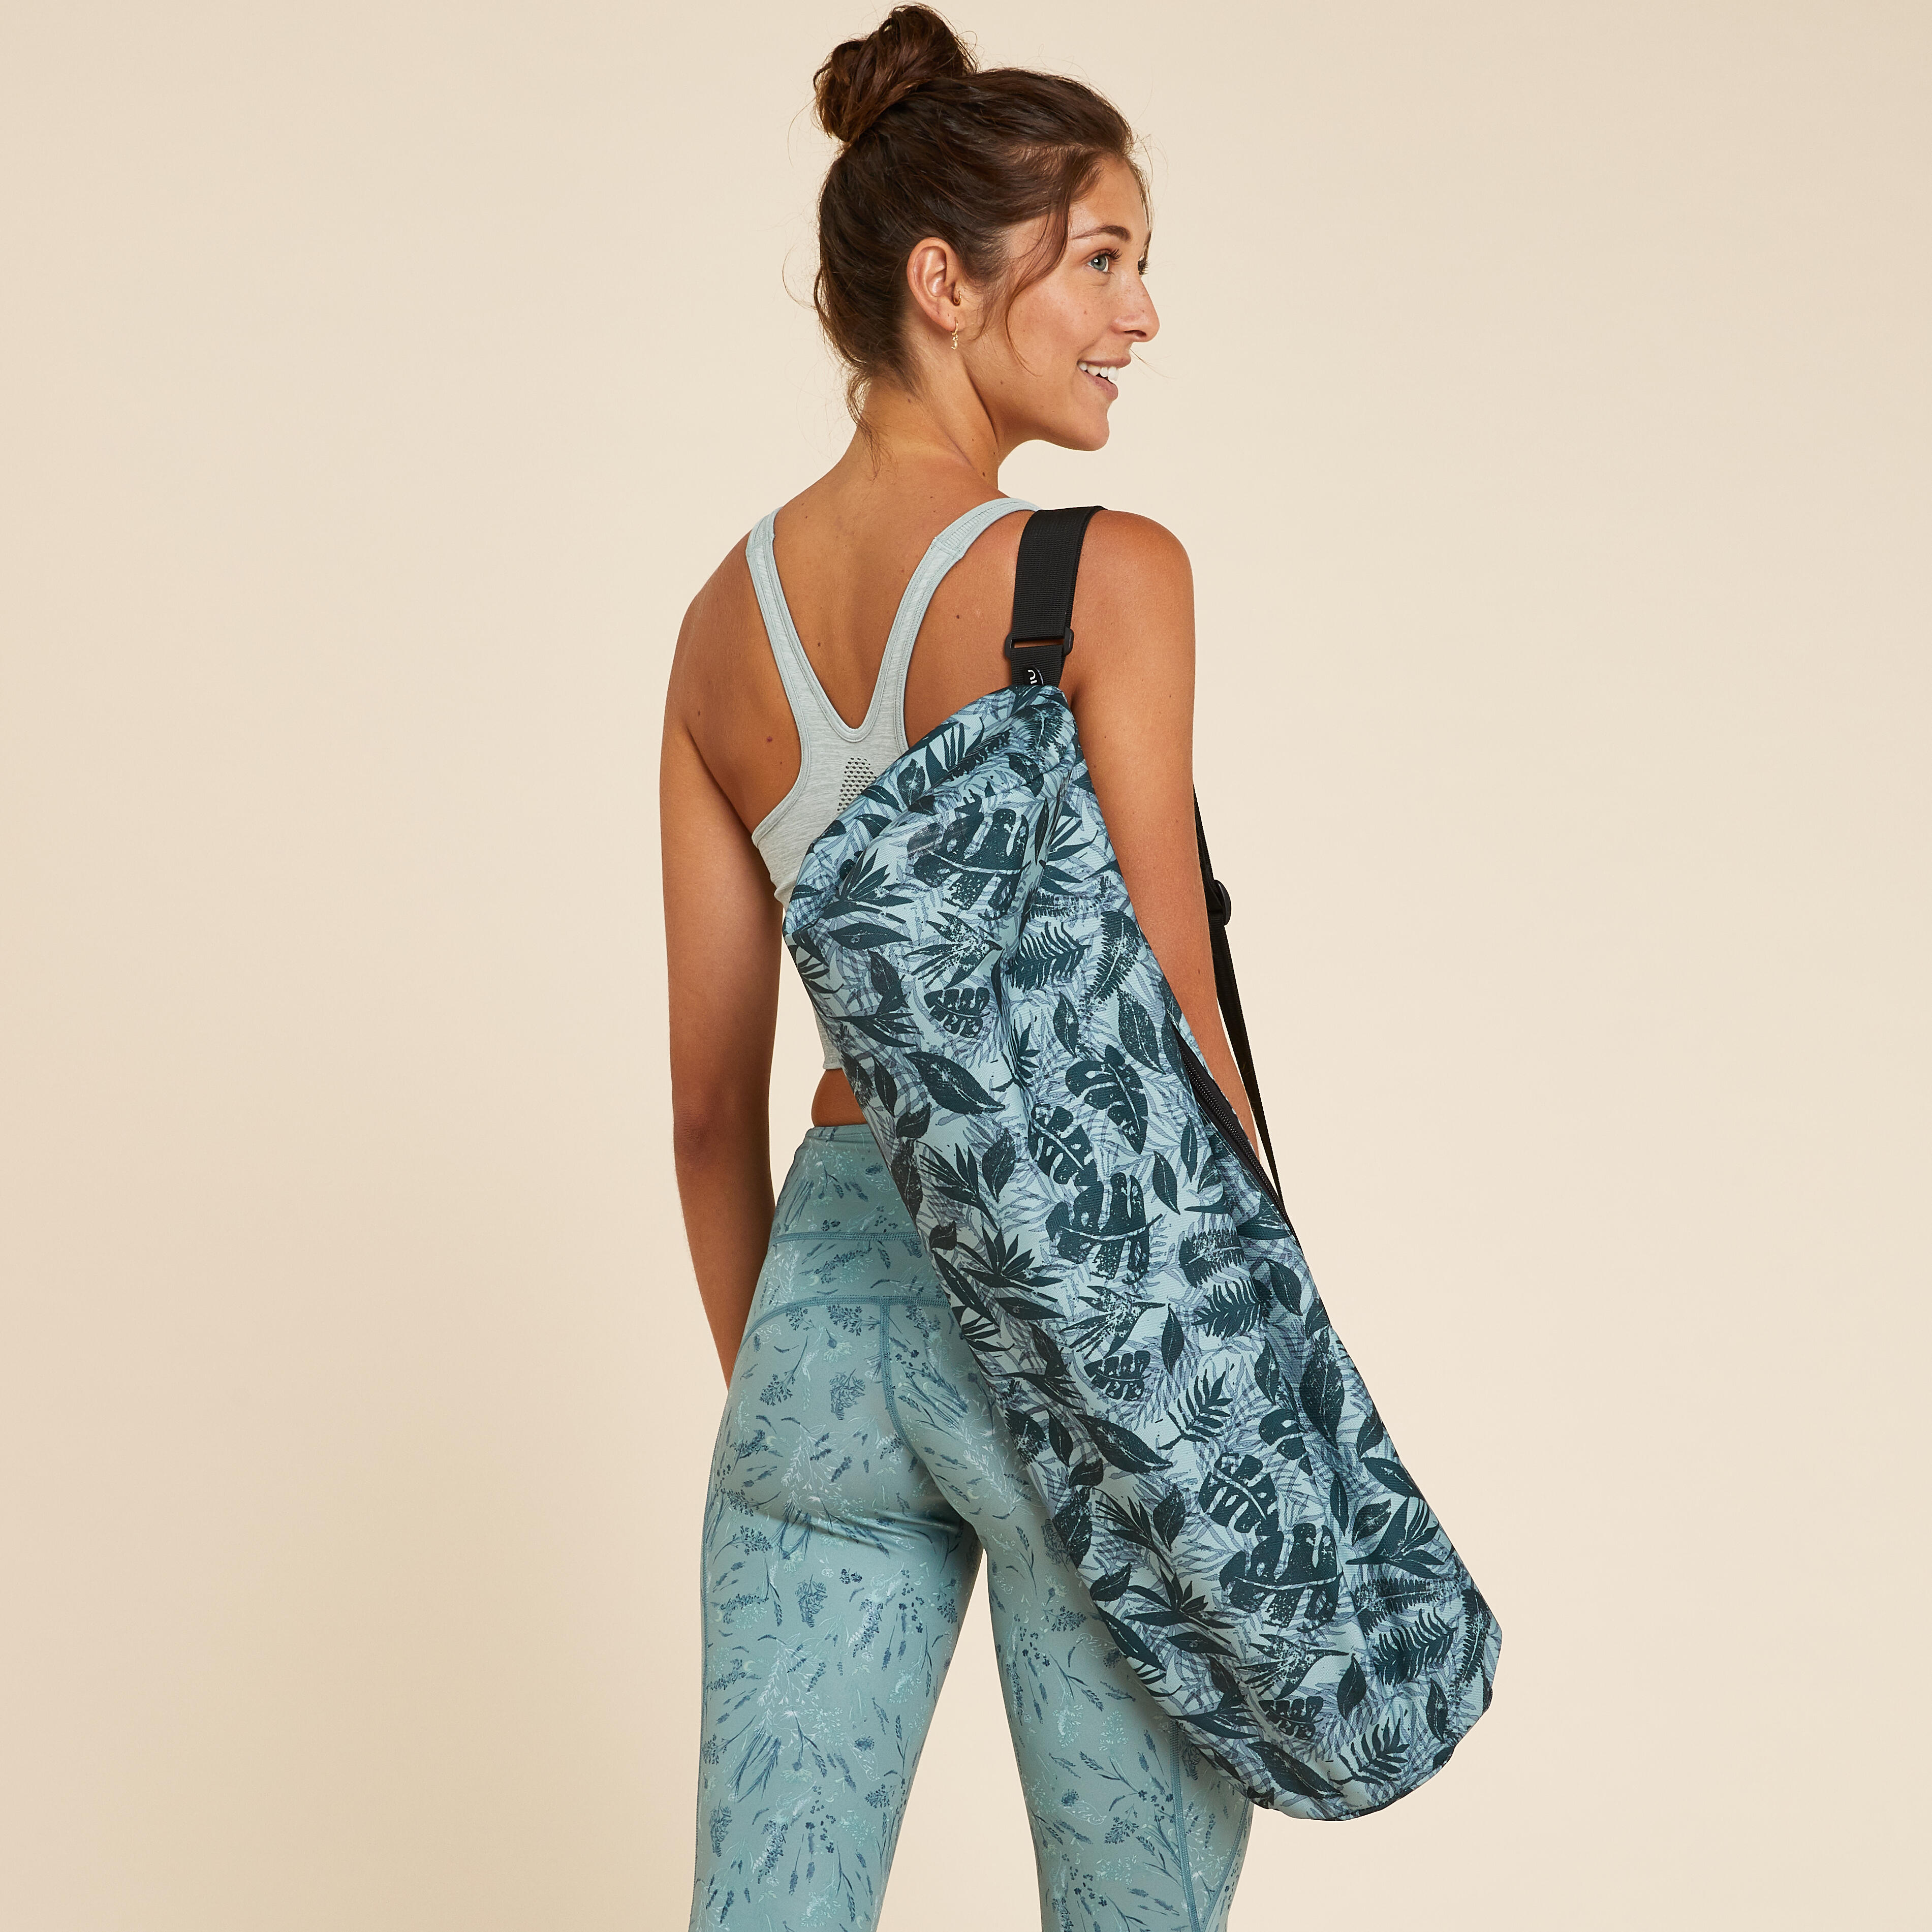 Buy Yoga Mat Bag - Blue Print, Yoga Accessories in India